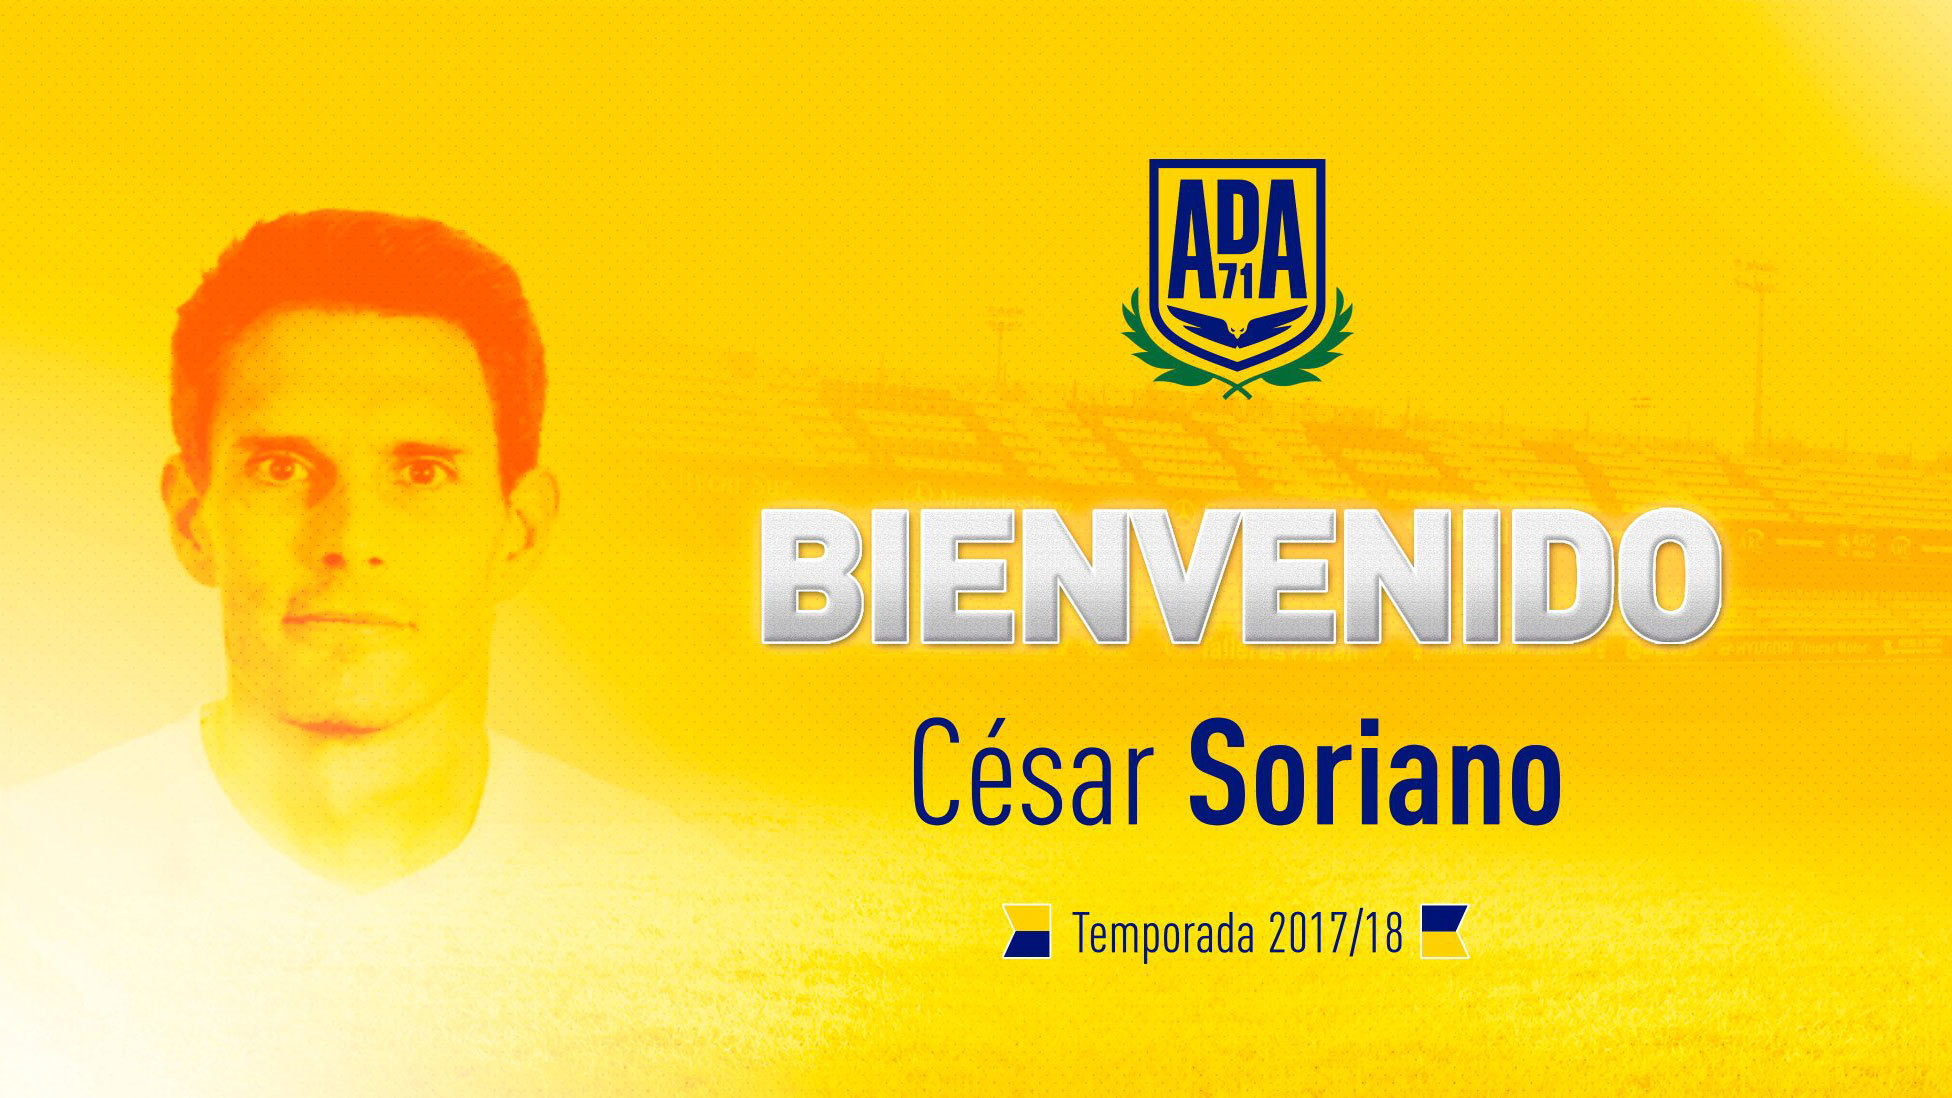 Alcorcn presenta a Csar Soriano